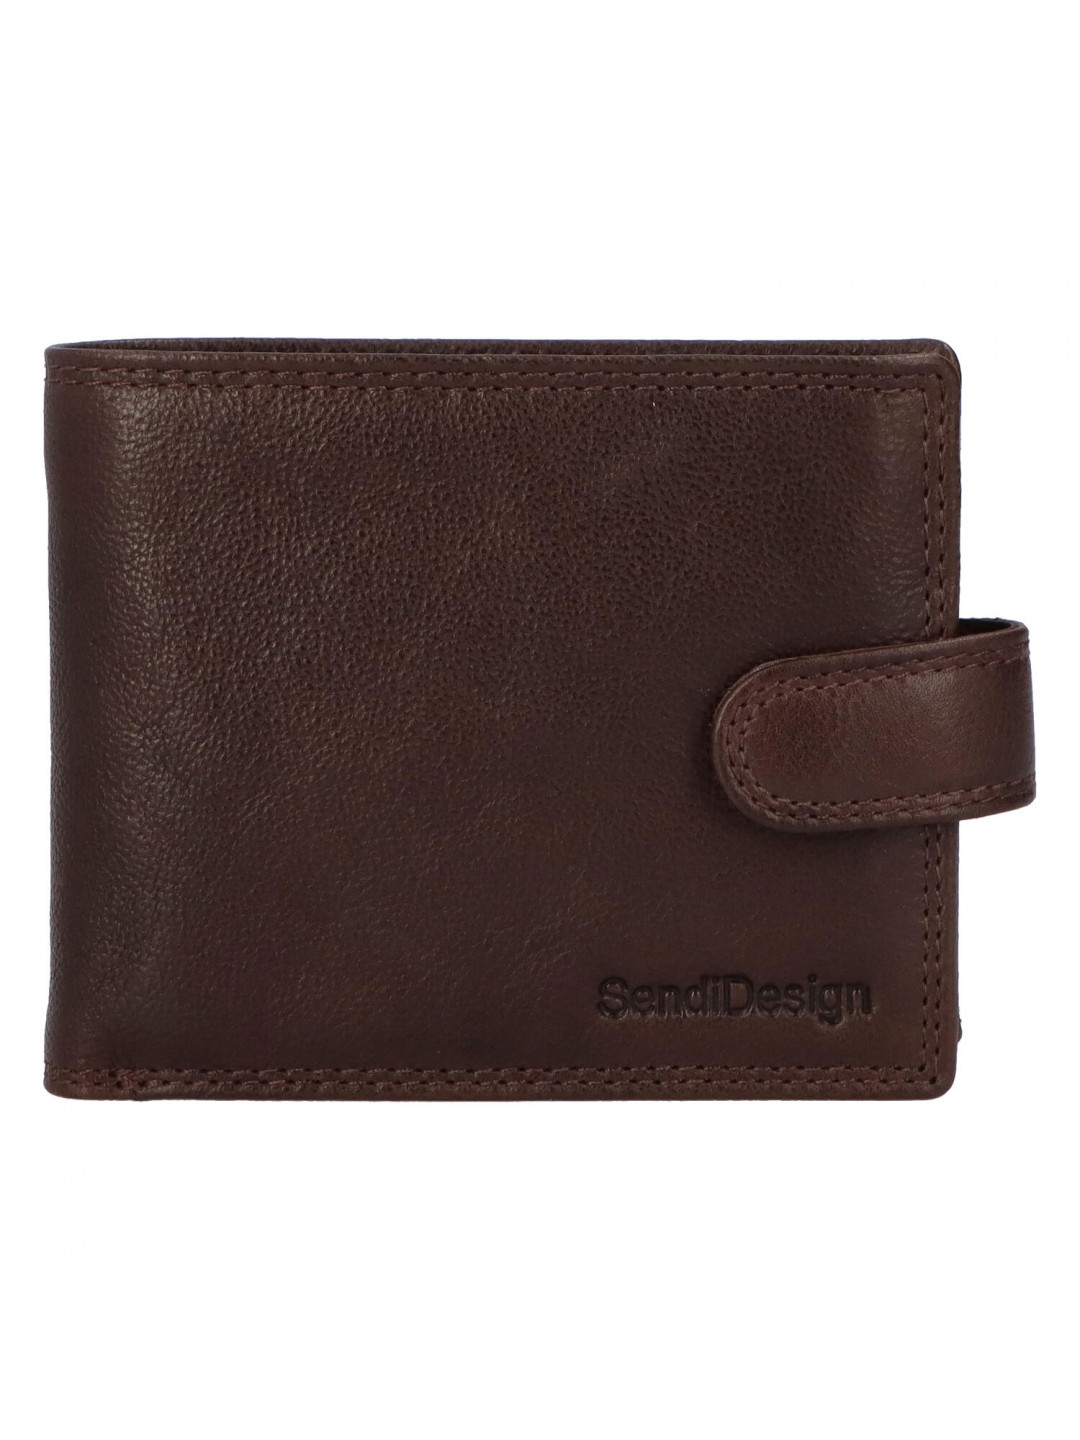 Pánská kožená peněženka tmavě hnědá – SendiDesign Maty New